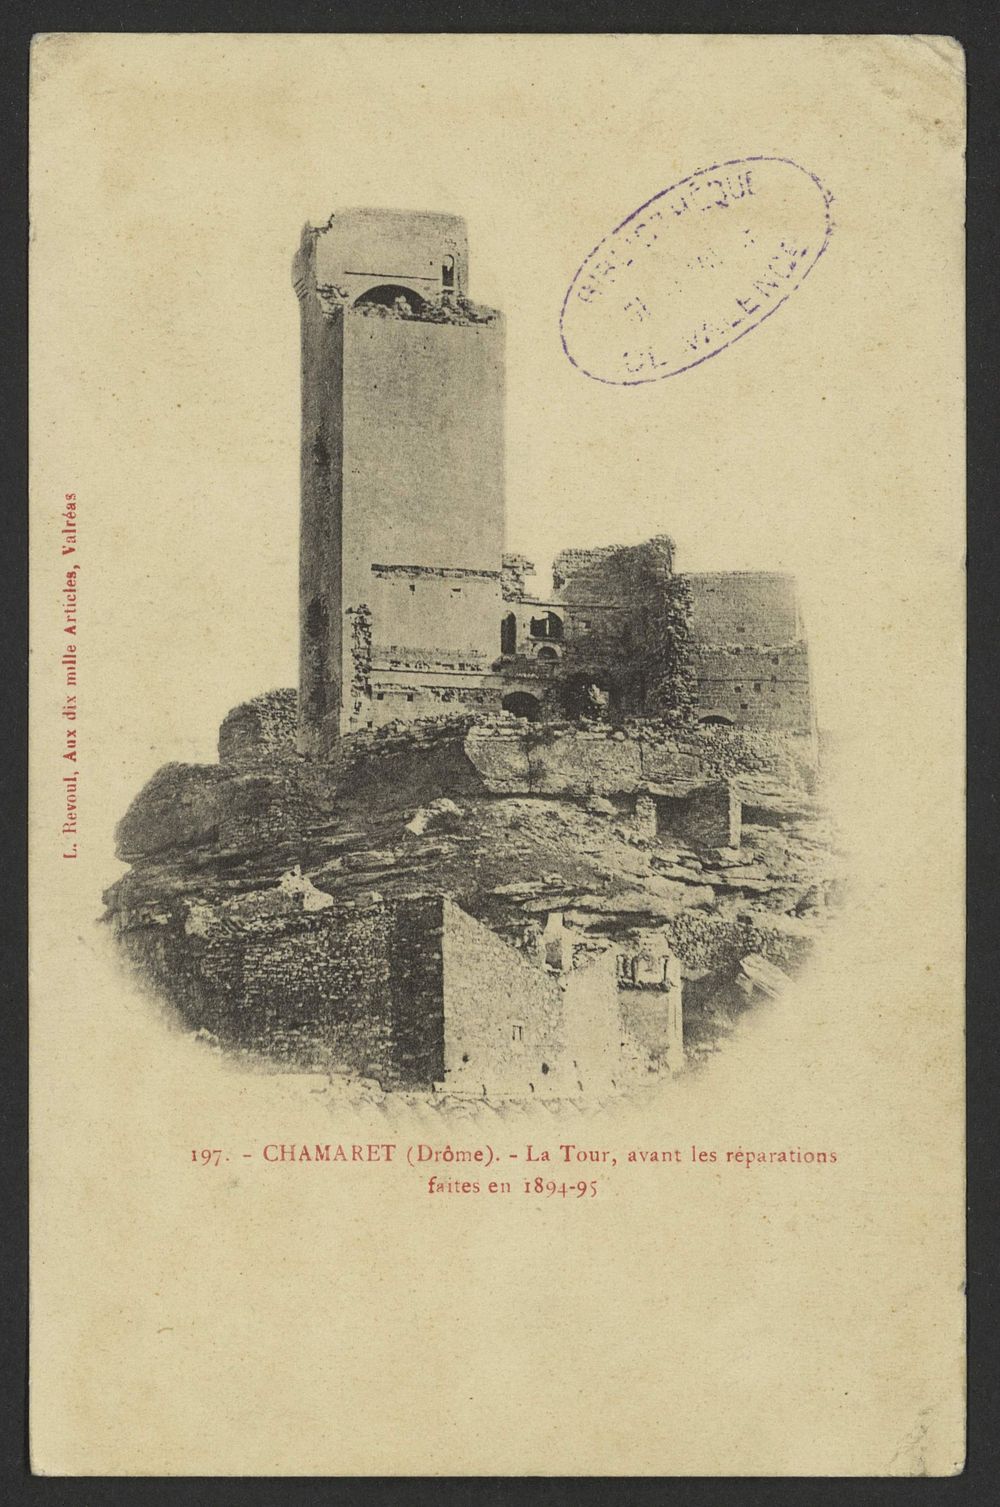 Chamaret (Drôme). - La Tour, avant les réparations faites en 1894-95